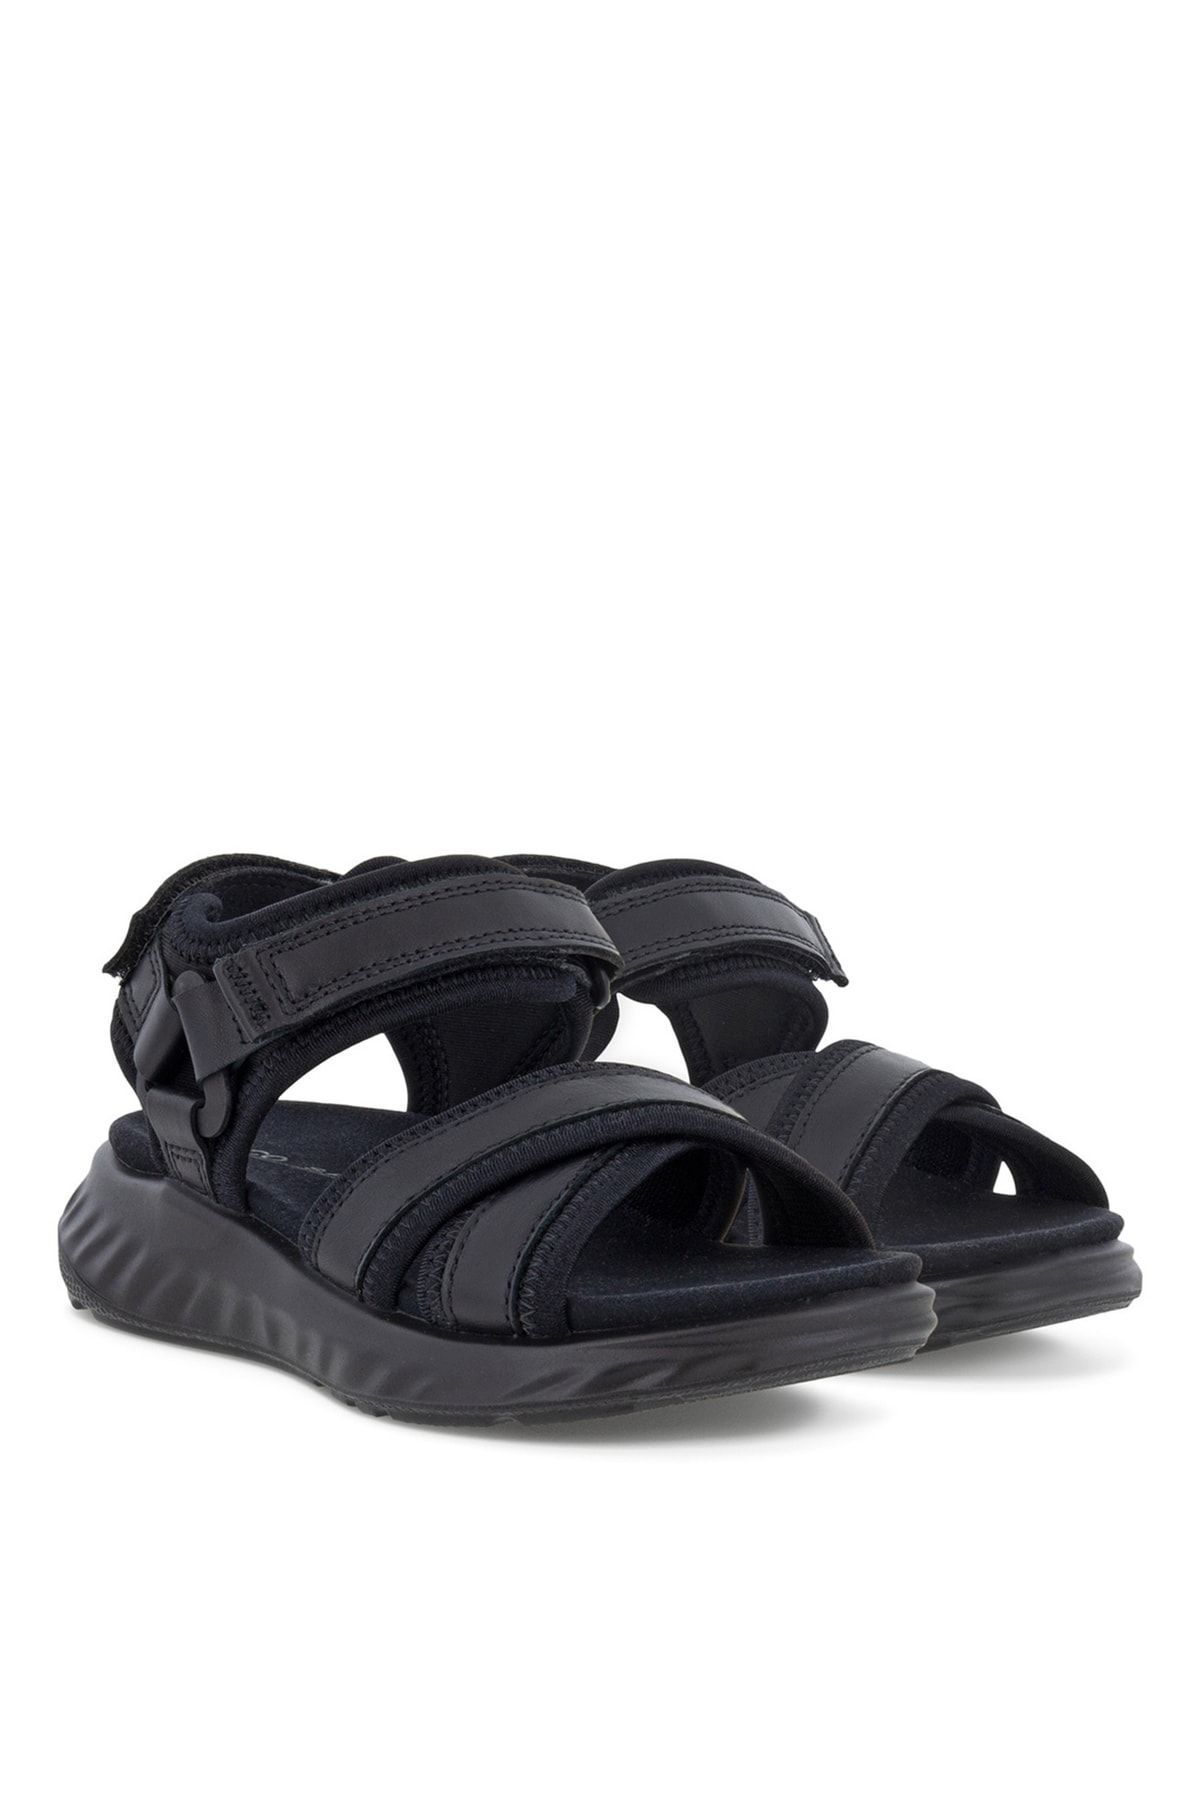 Ecco Sandale Girl SP1 Lite Sandal K BlackBlack